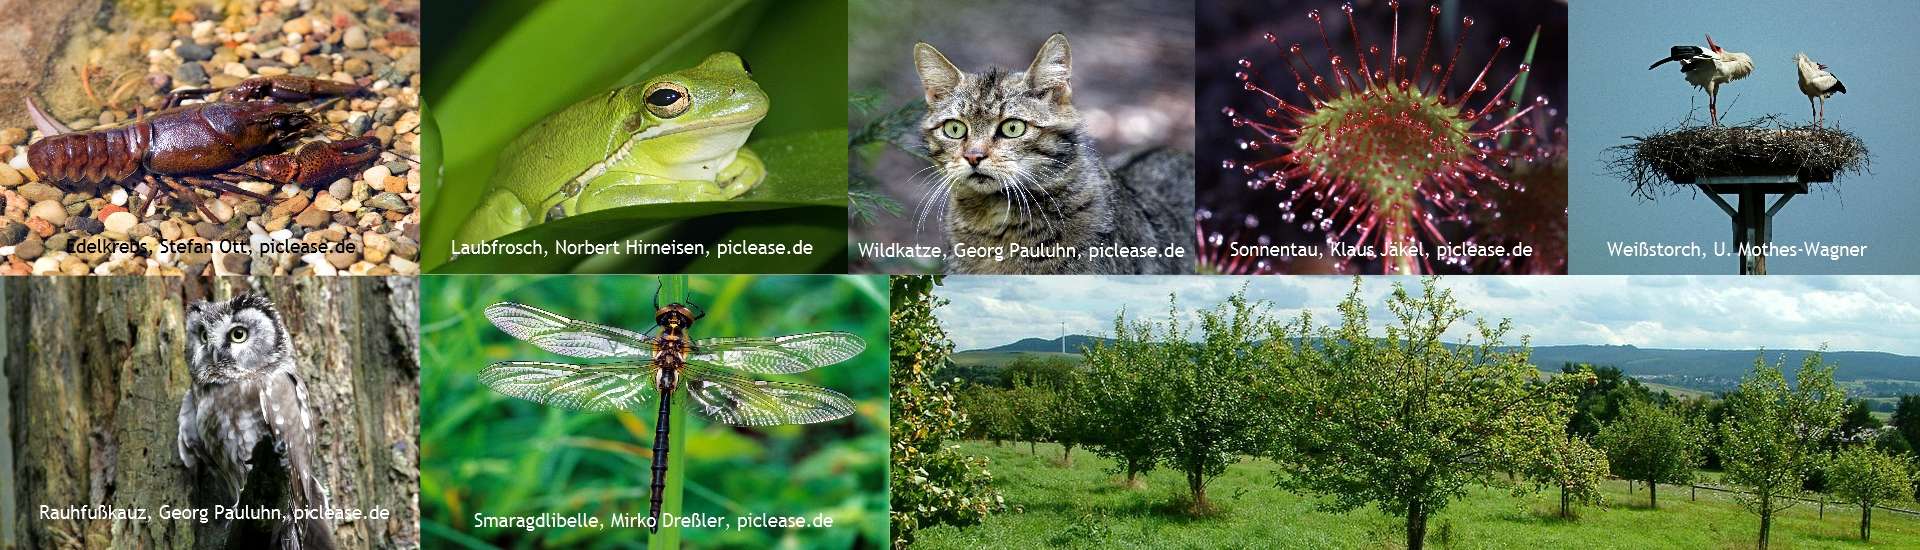 Flora und Fauna  - Biodiversitätskollage